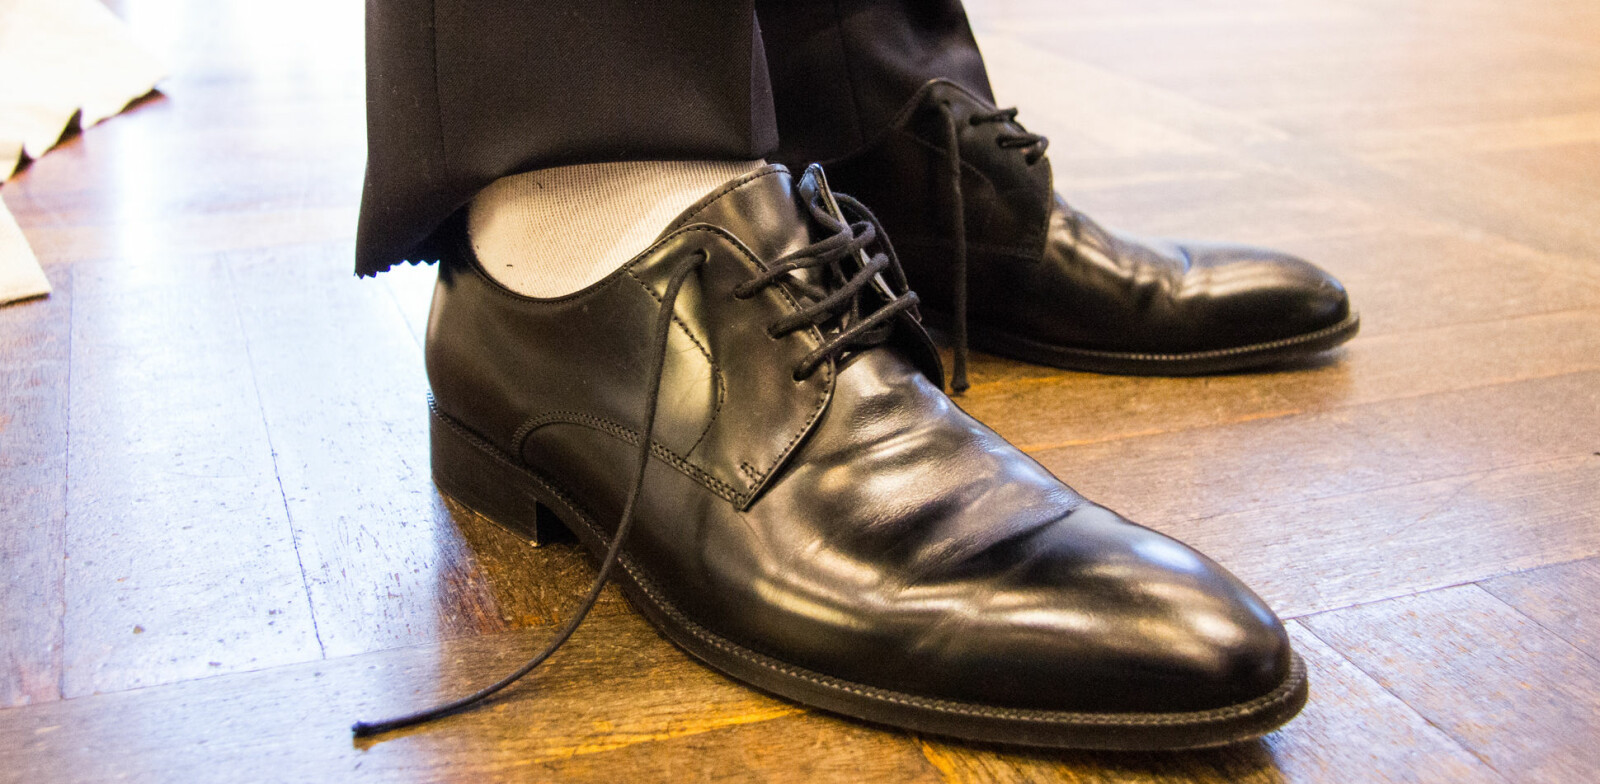 <b>DRESSTABBER: </b>Hvite sokker til mørk dress er «ikke lov». Det samme gjelder for slitte og skitne sko. Husk også å knytte skolissene.